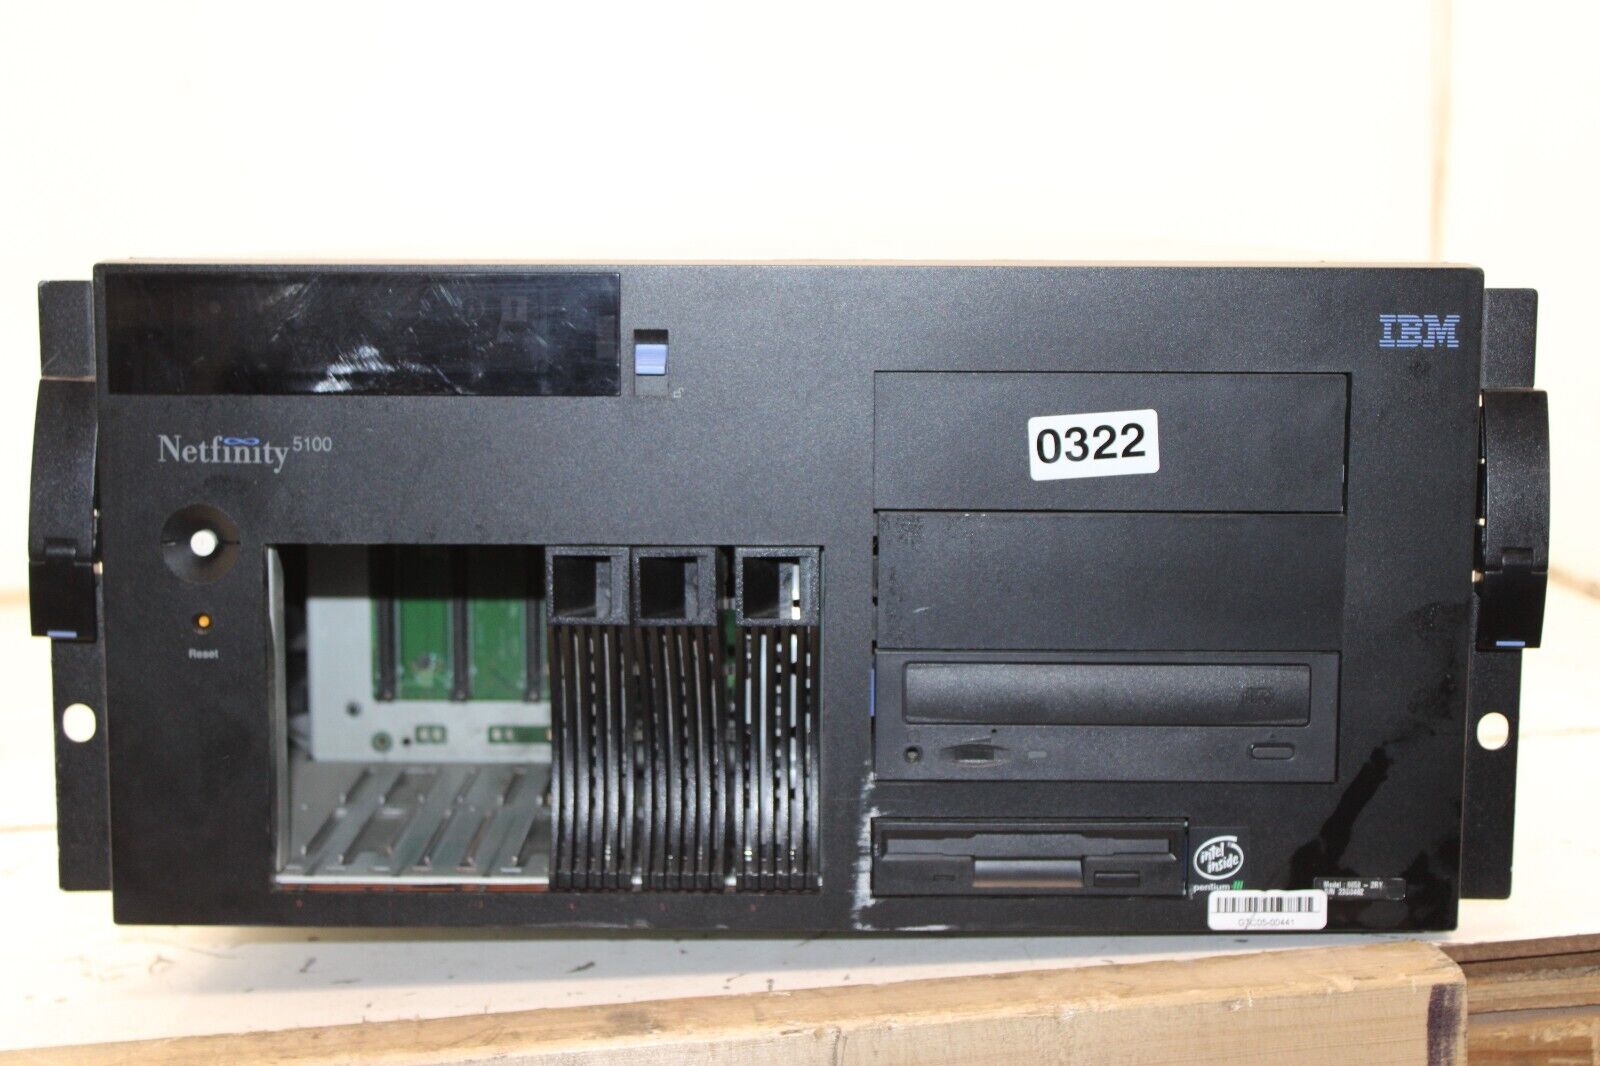 IBM Netfinity 5100 8658-2RY Server Dual Pentium 3 733MHz 512MB Ram No Drives